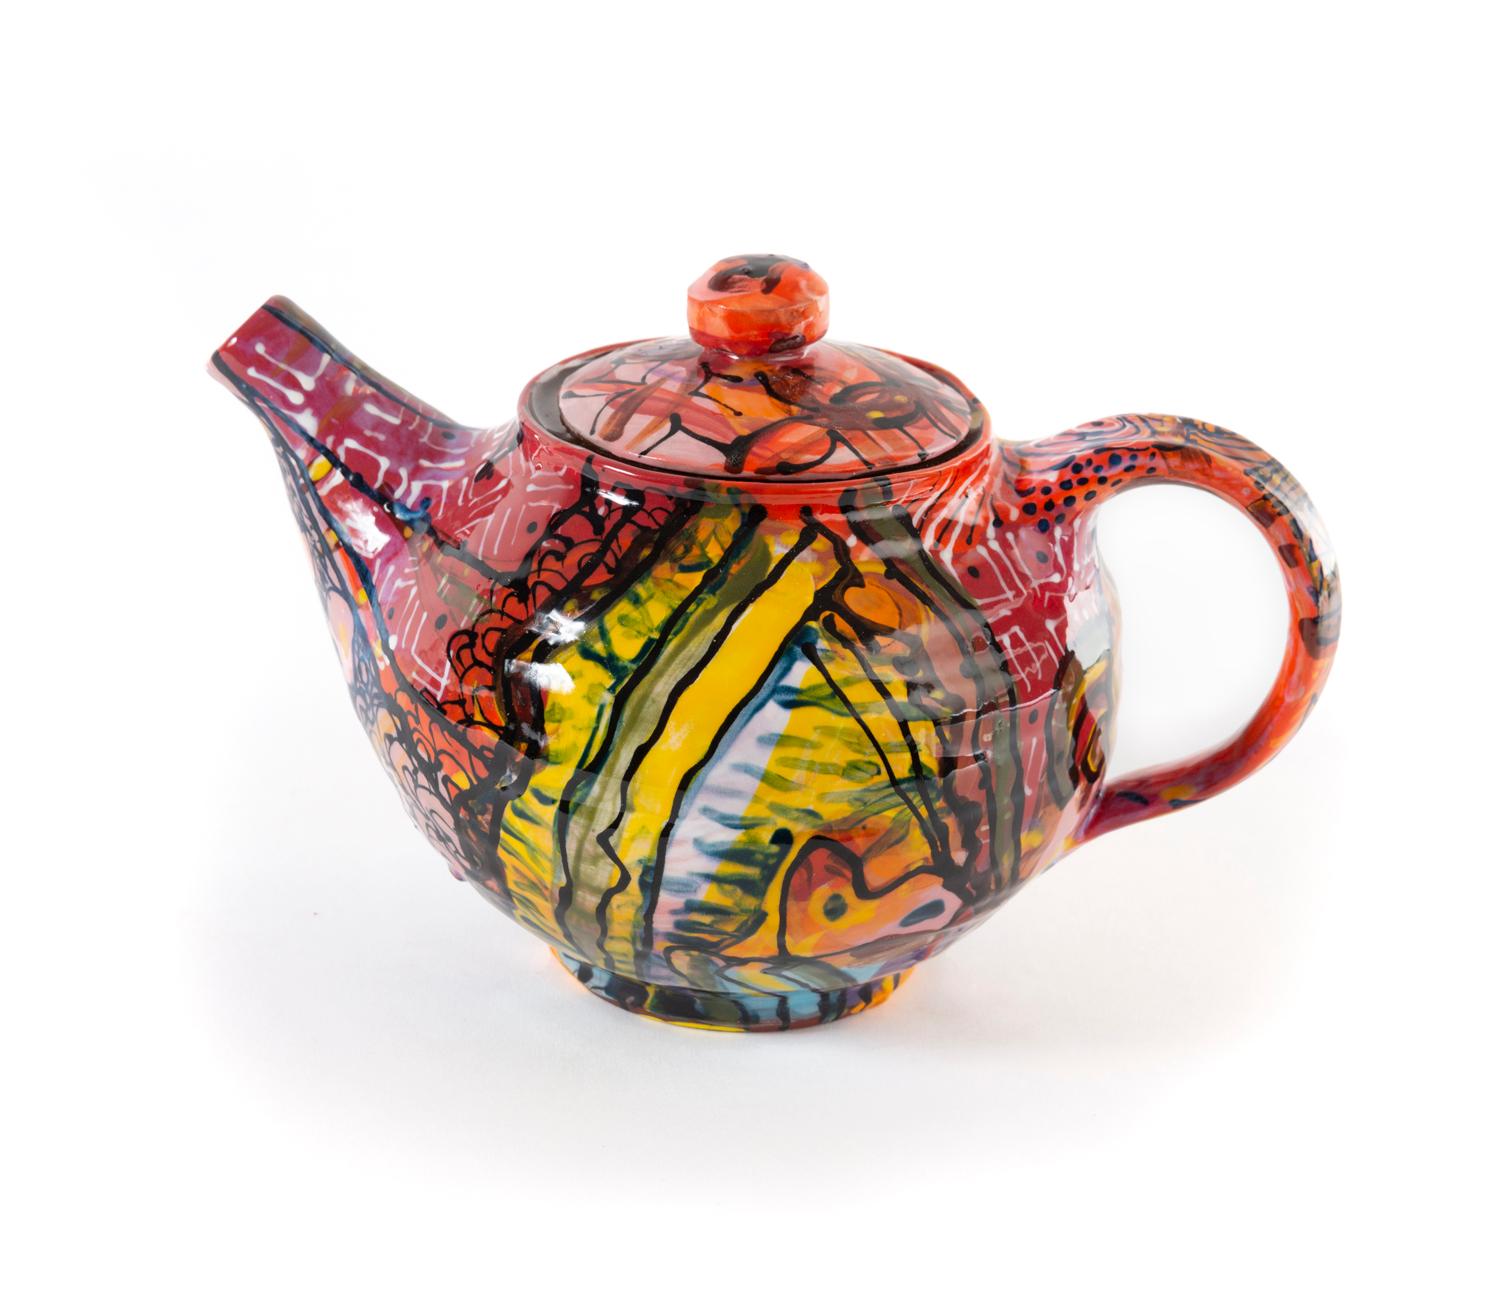 Roberto Lugo
James Baldwin teapot, 2020
Glazed stoneware
Measures: 5.5. x 8.75 x 6 in.